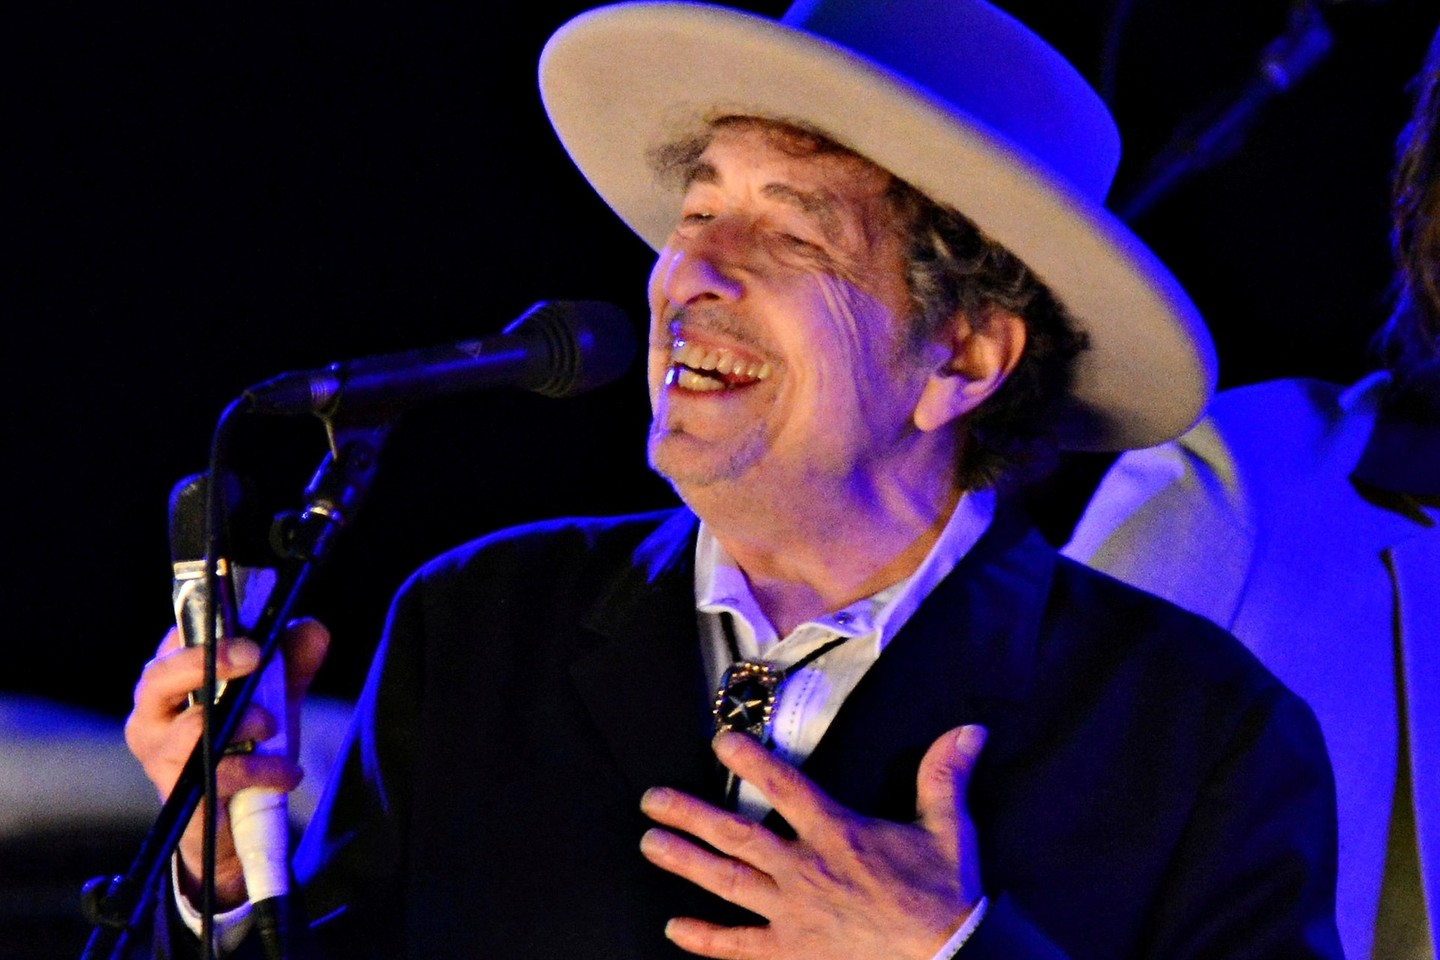 B.Dylanui Nobelio literatūros premija skirta „už naujos poetinės išraiškos didžioje Amerikos dainavimo tradicijoje sukūrimą“.